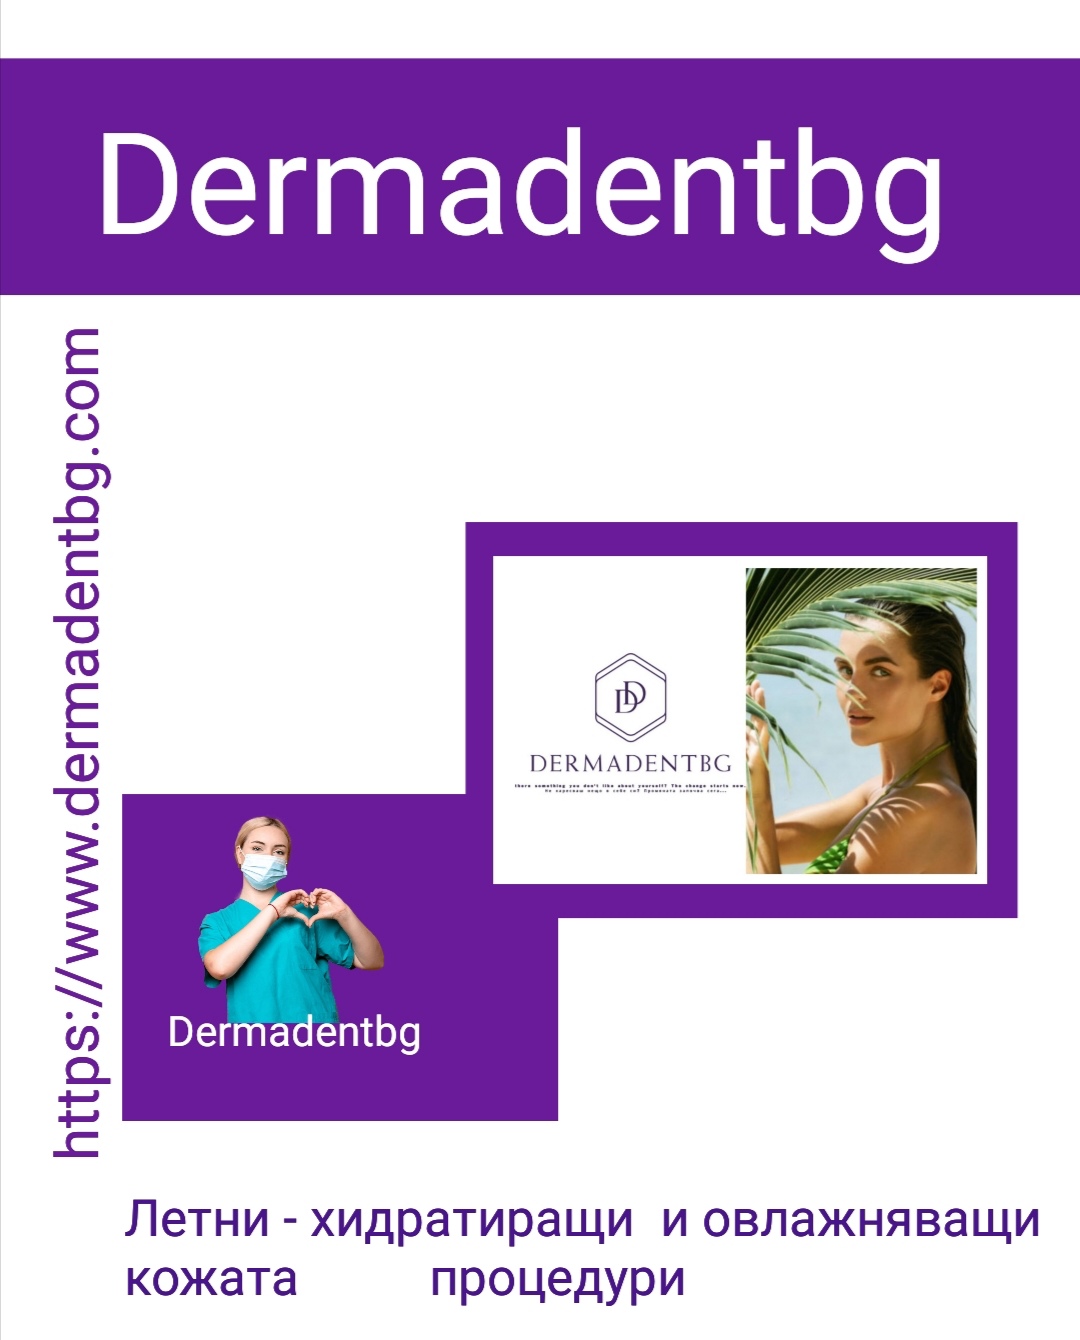 Естетичен център Dermadentbg Бургас - дентална медицина, естетика, мезотерапия, анти-ейдж, козметични процедури за лице.